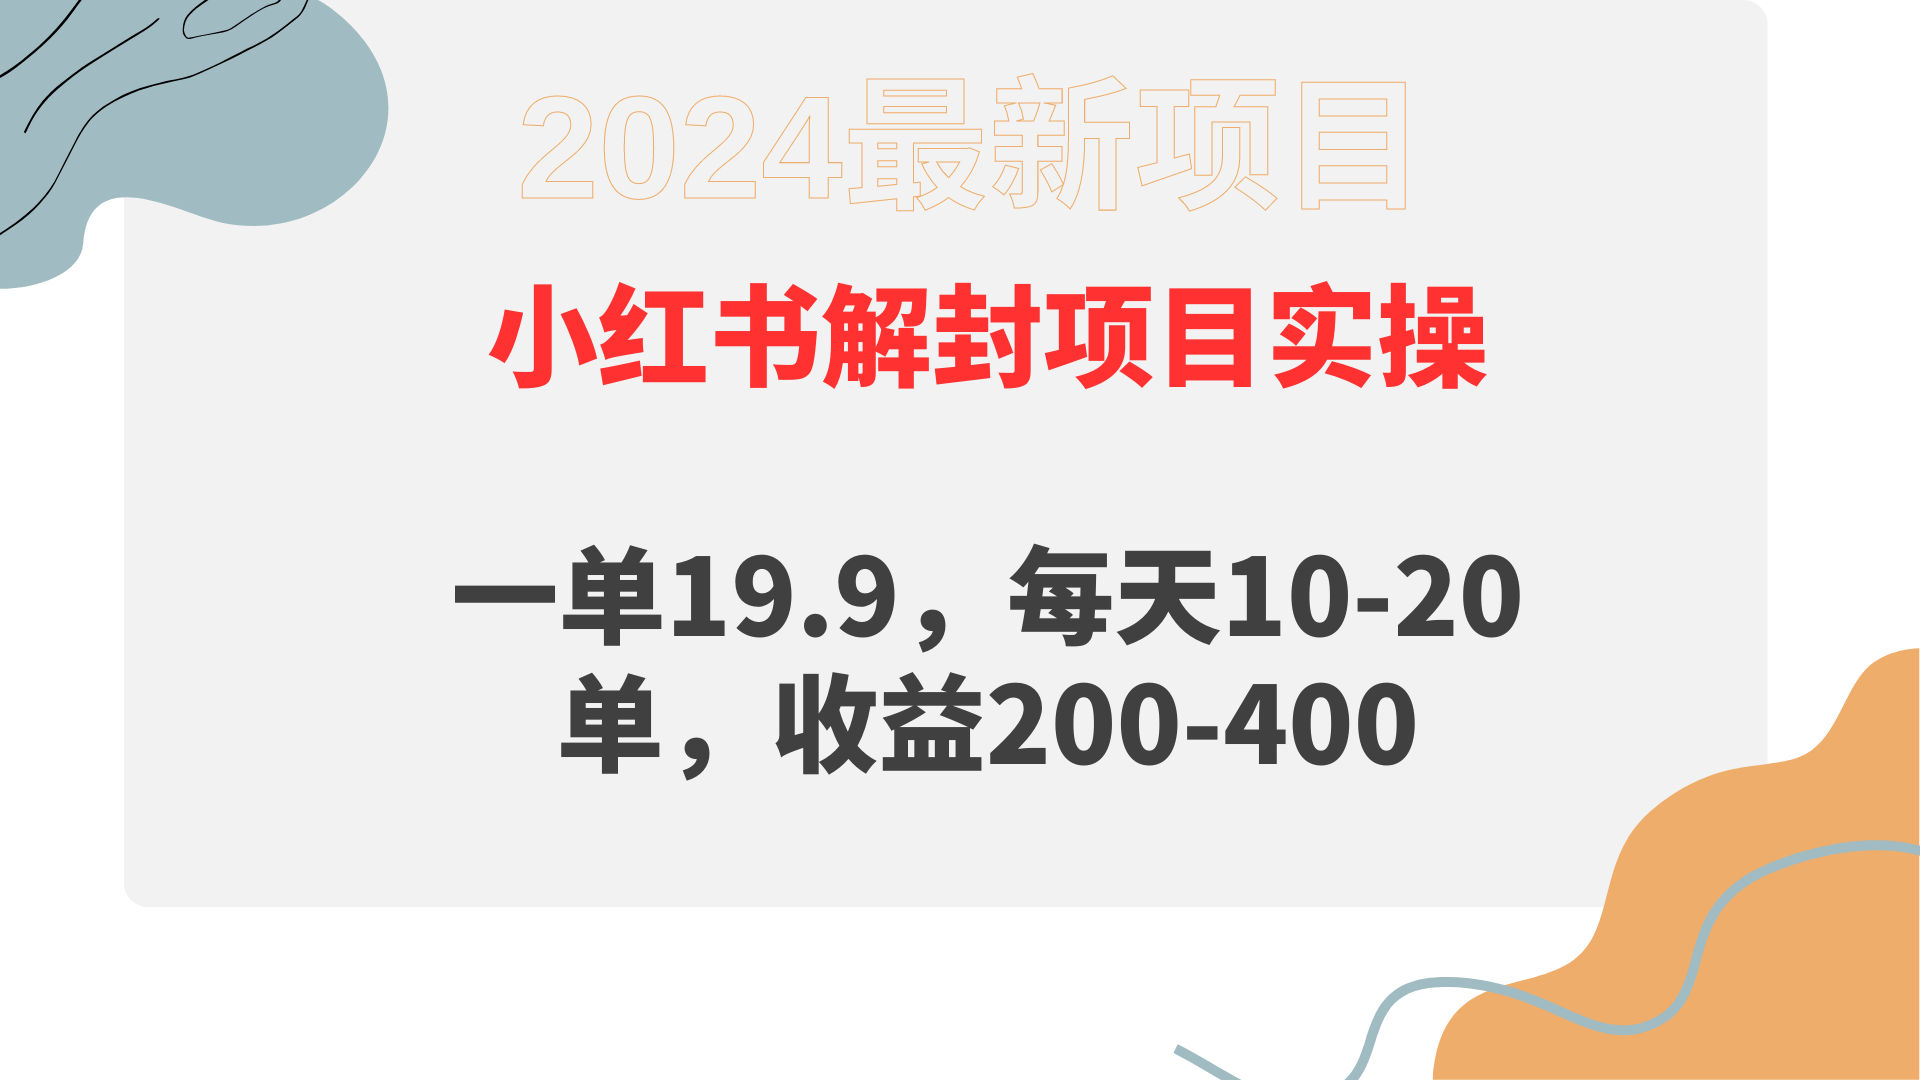 小红书解封项目:一单19.9,每天10-20单,收益200-400